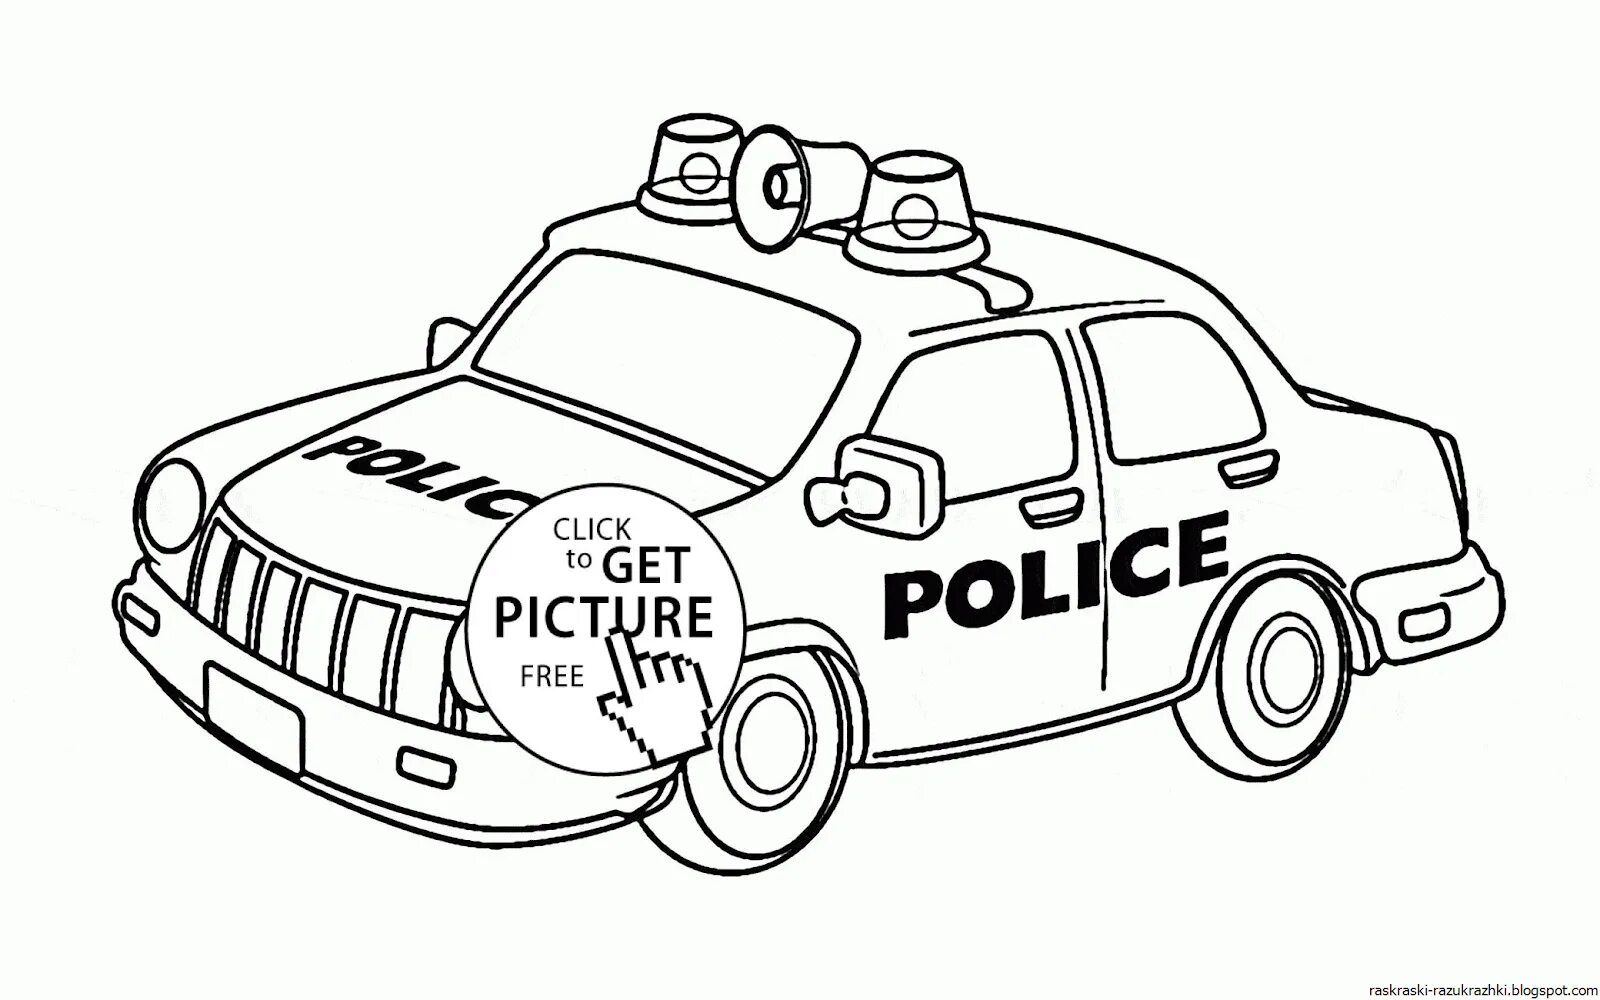 Cute police car preschool coloring book